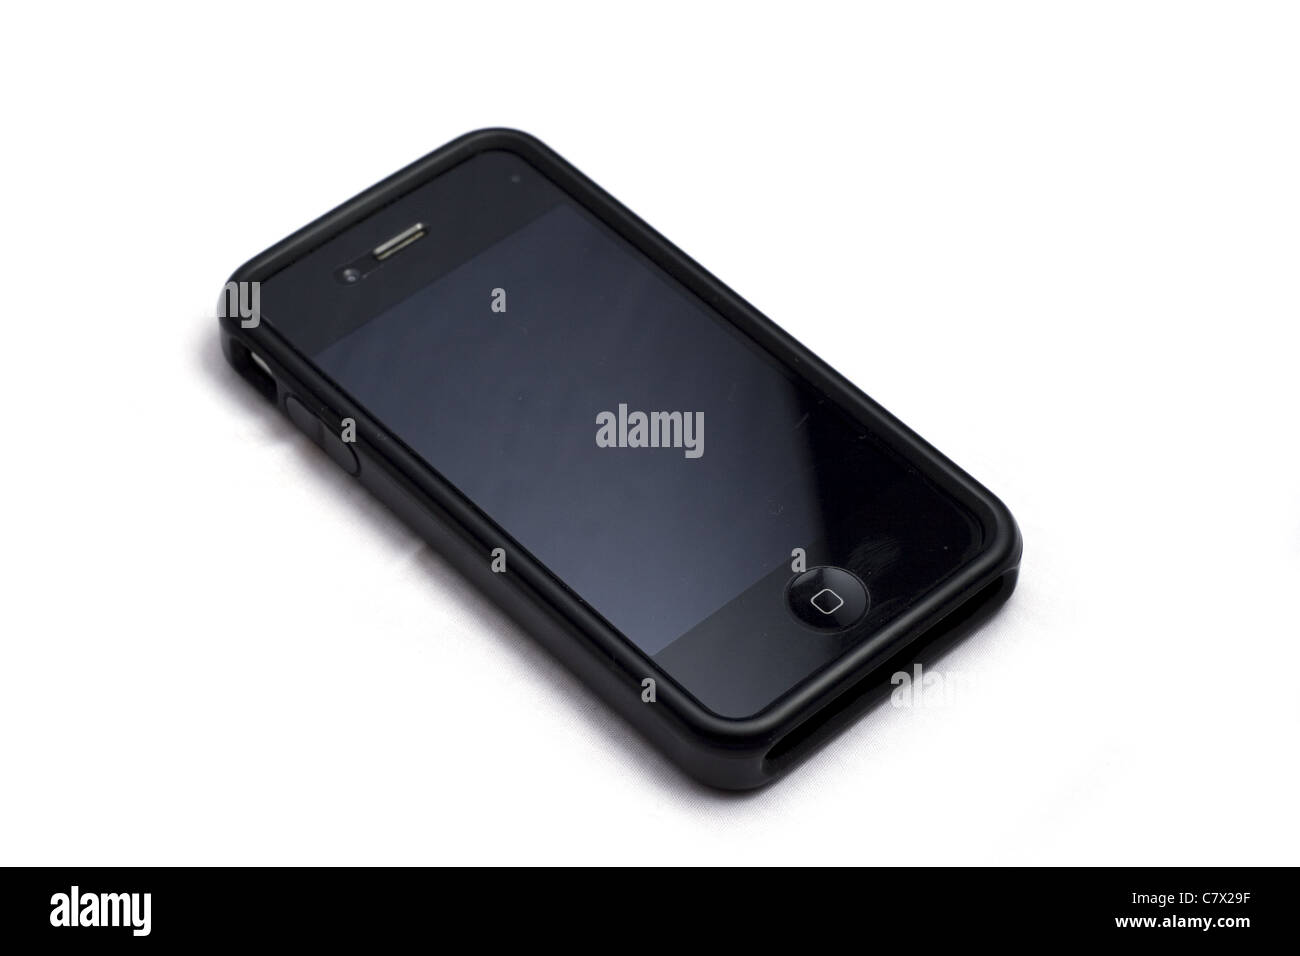 iPhone 4 Handy ausgeschaltet im schlanken Gehäuse Stockfoto